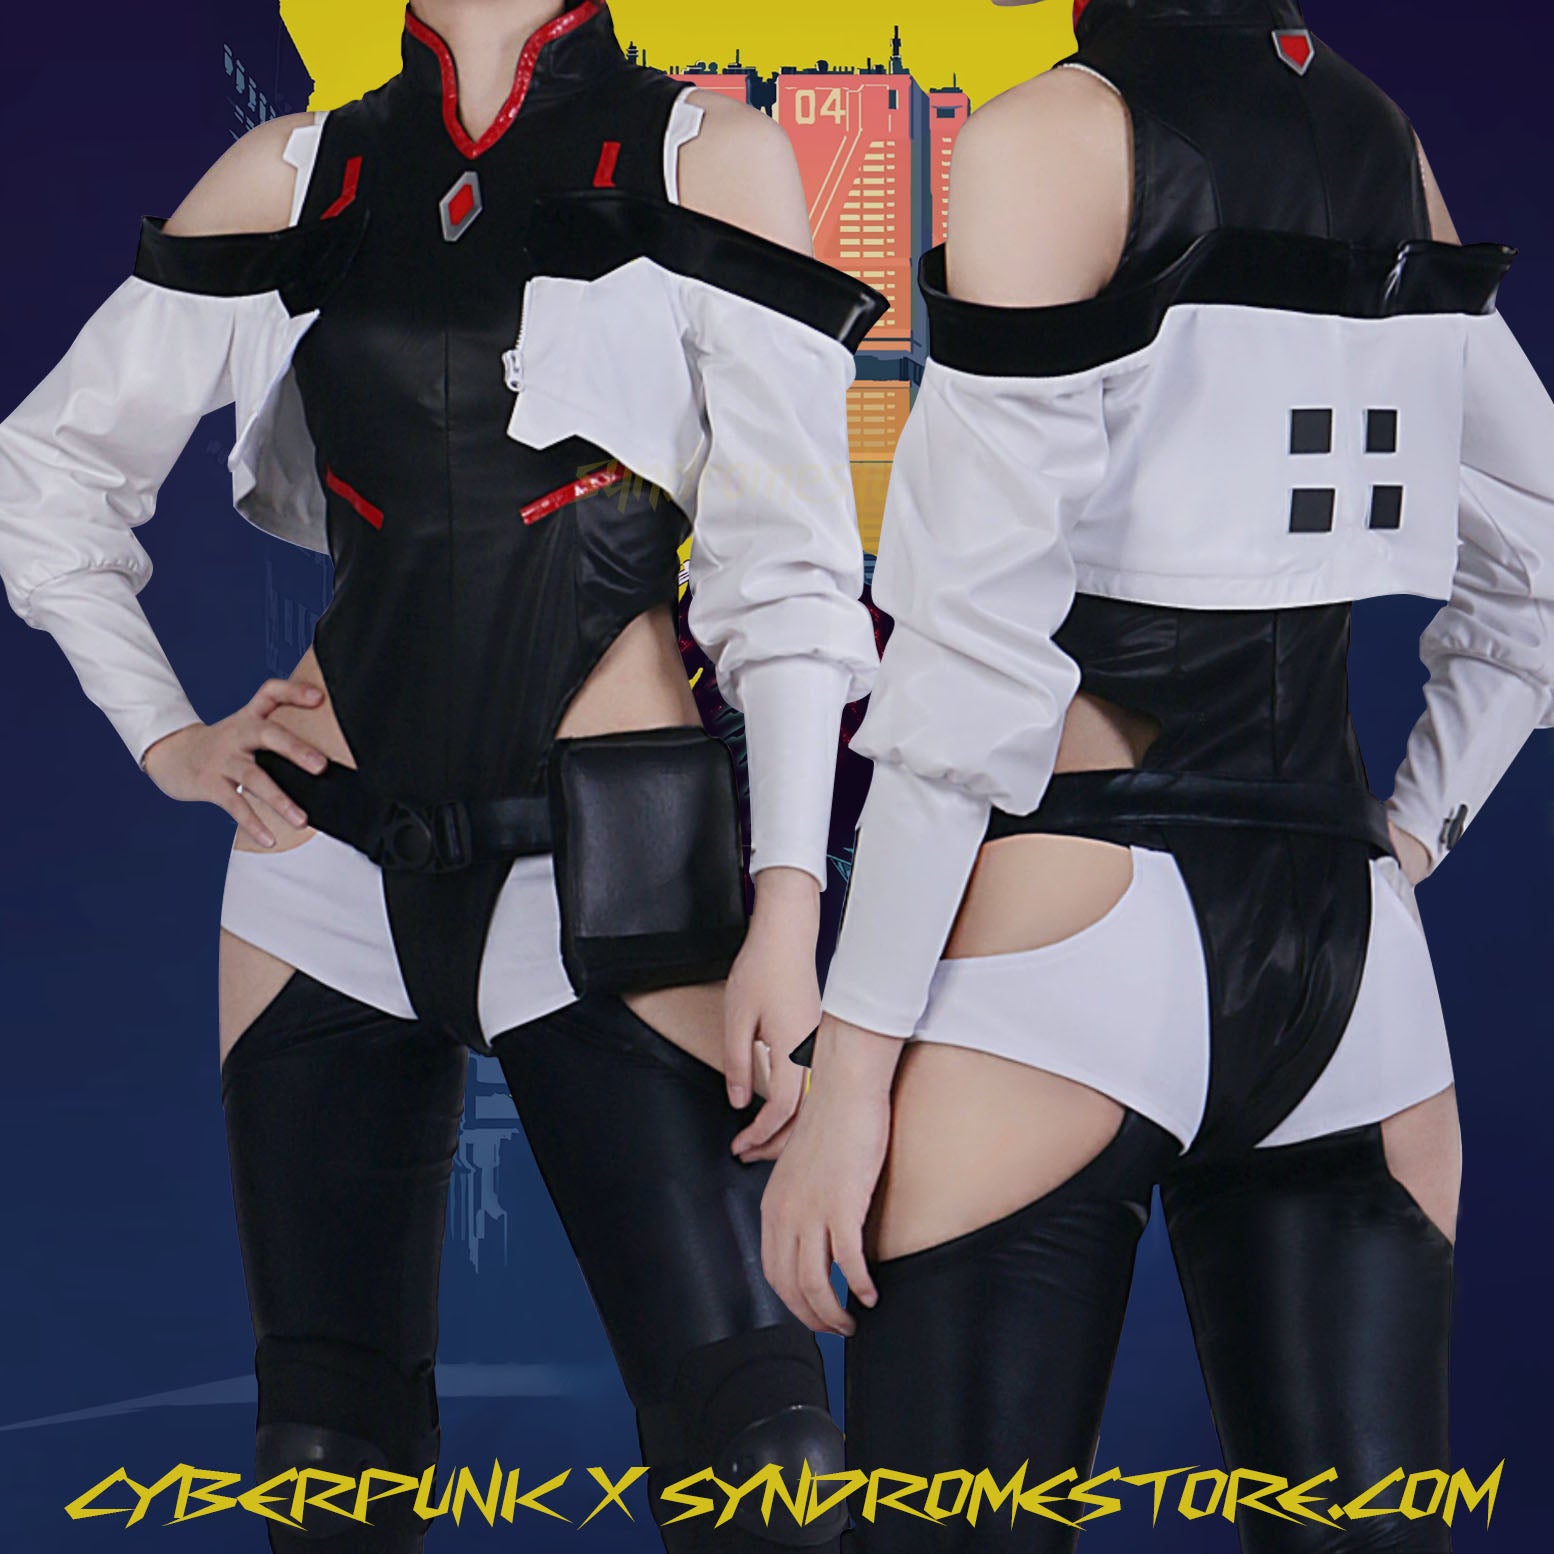 Cyberpunk 2077 Edgerunners Lucy Cosplay Jacket - Get 30% OFF